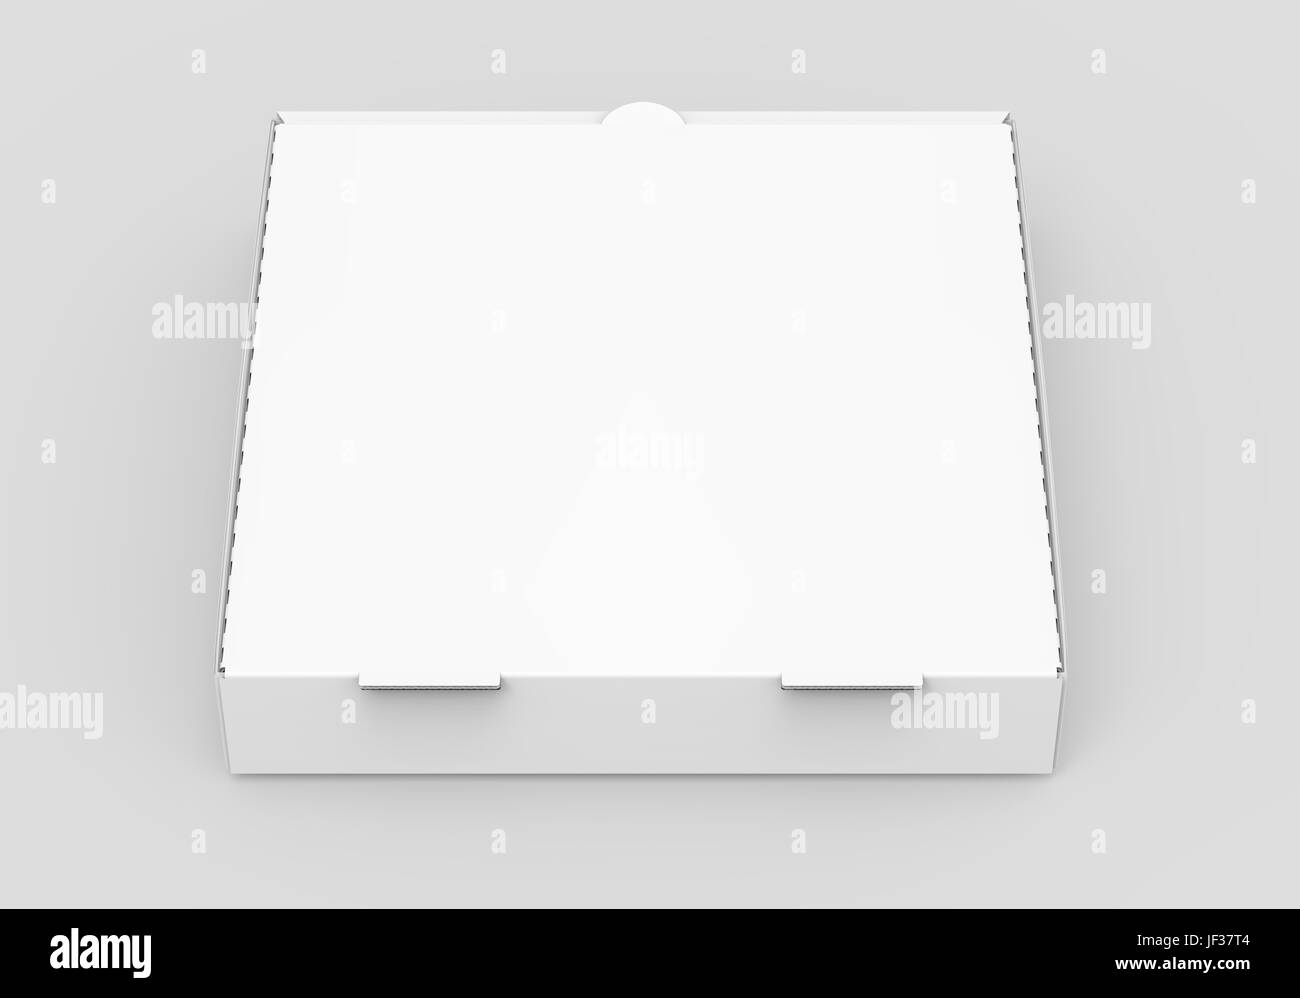 Le rendu 3D boîte à pizza fermé blanc vide isolé, fond gris clair elevated view Banque D'Images